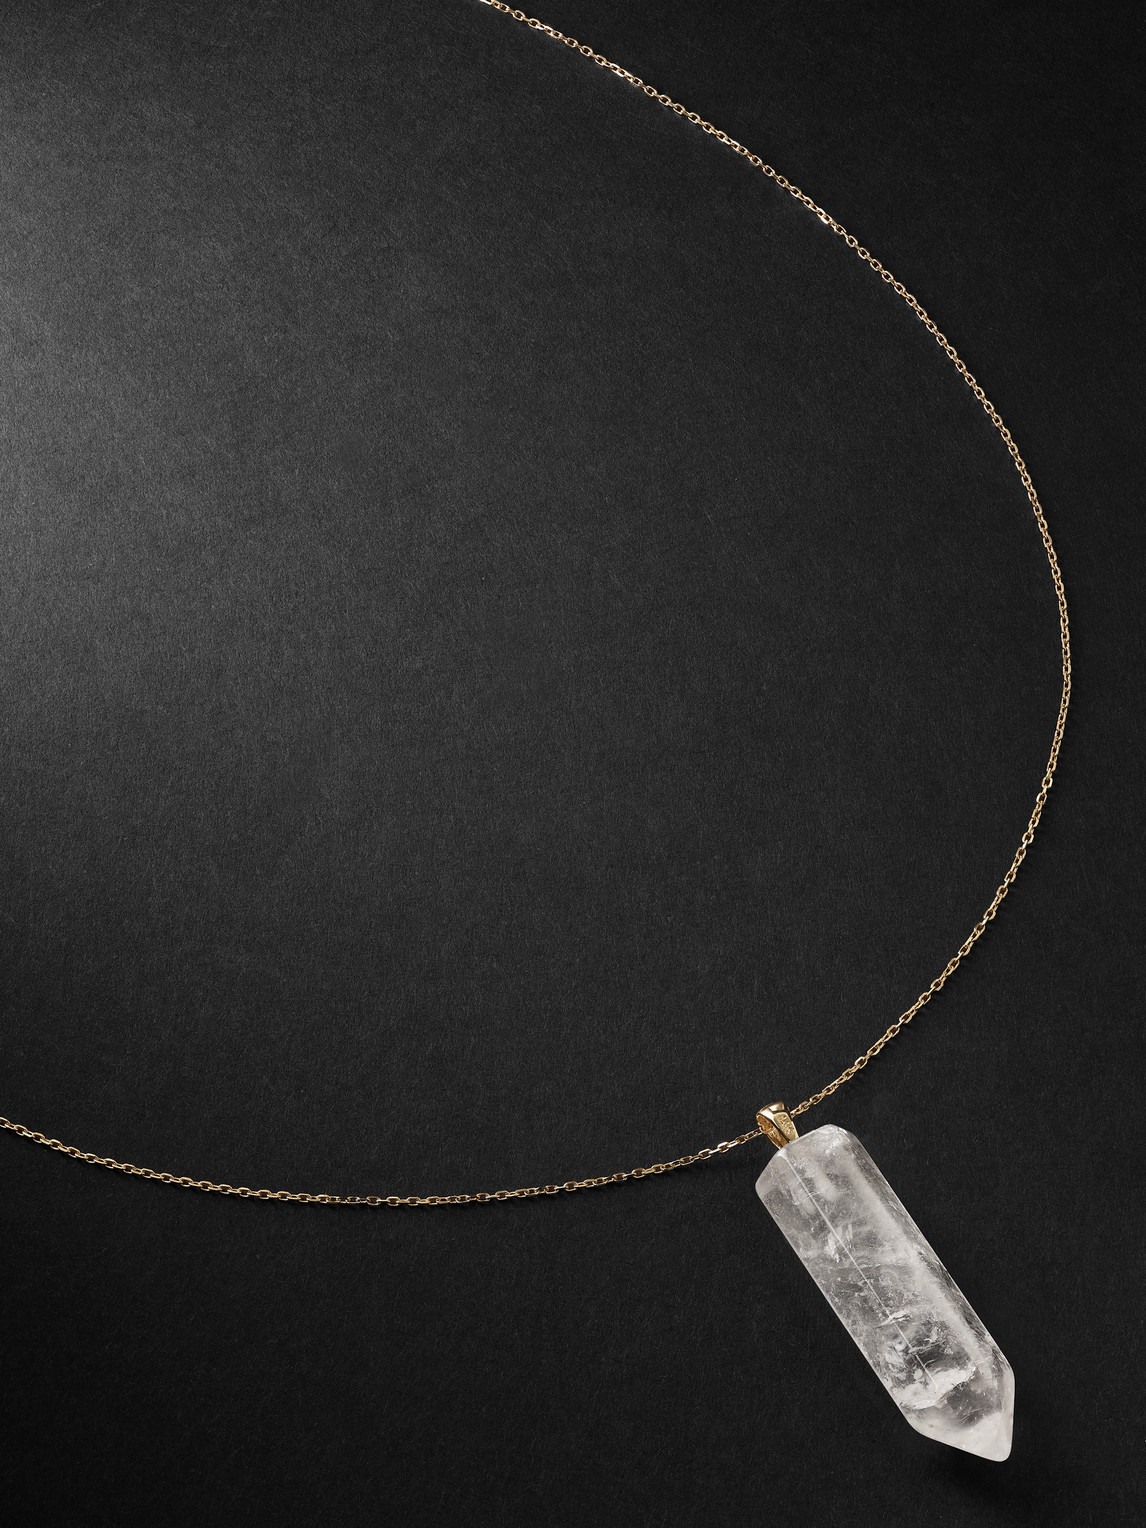 Gold Quartz Pendant Necklace